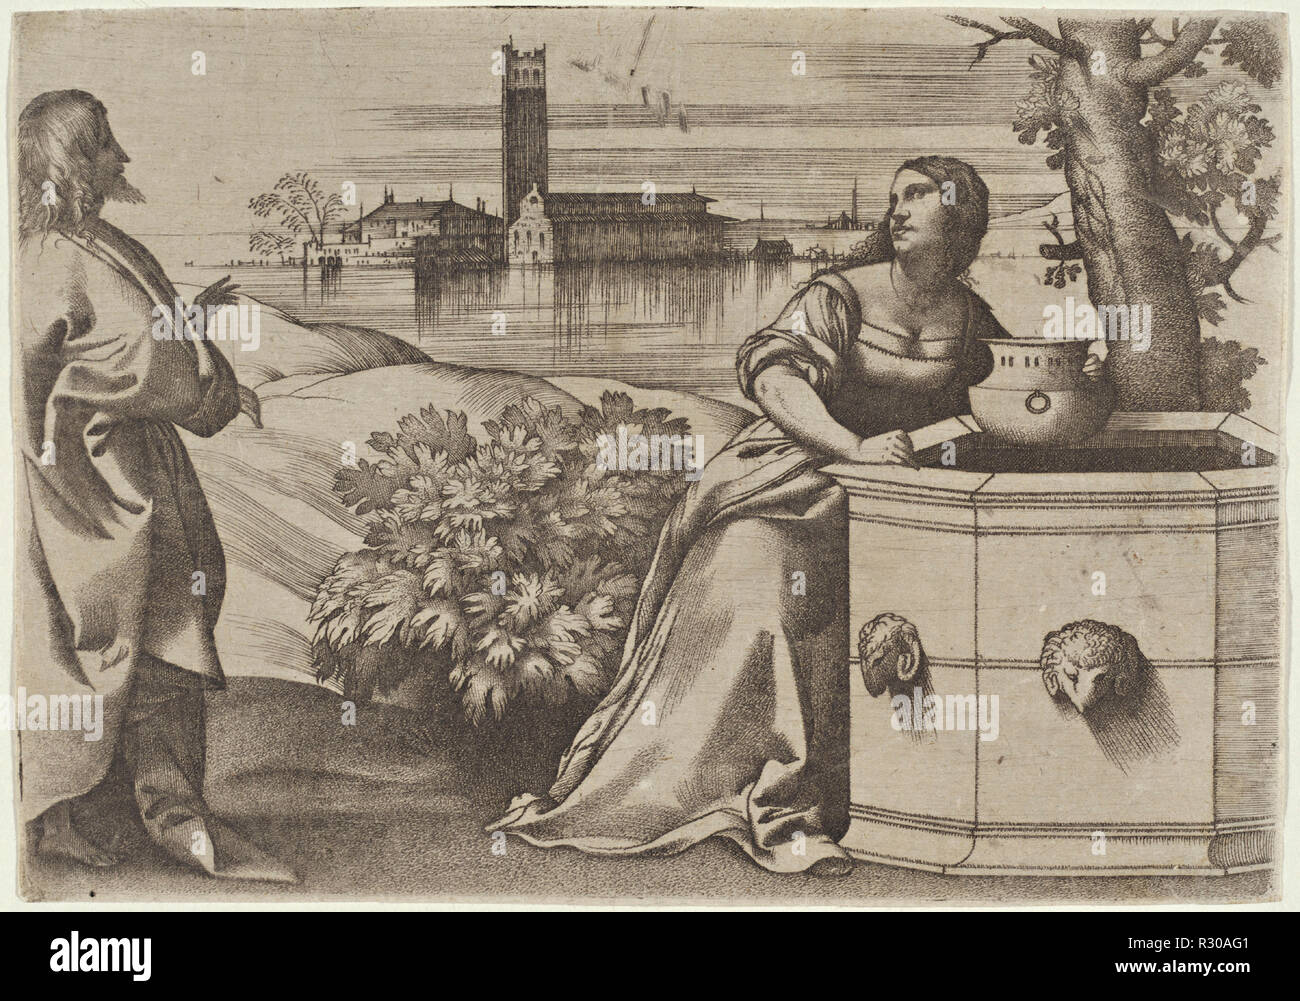 Cristo e la Samaritana. Data: c. 1510. Medium: incisione. Museo: National Gallery of Art di Washington DC. Autore: Giulio Campagnola. Foto Stock